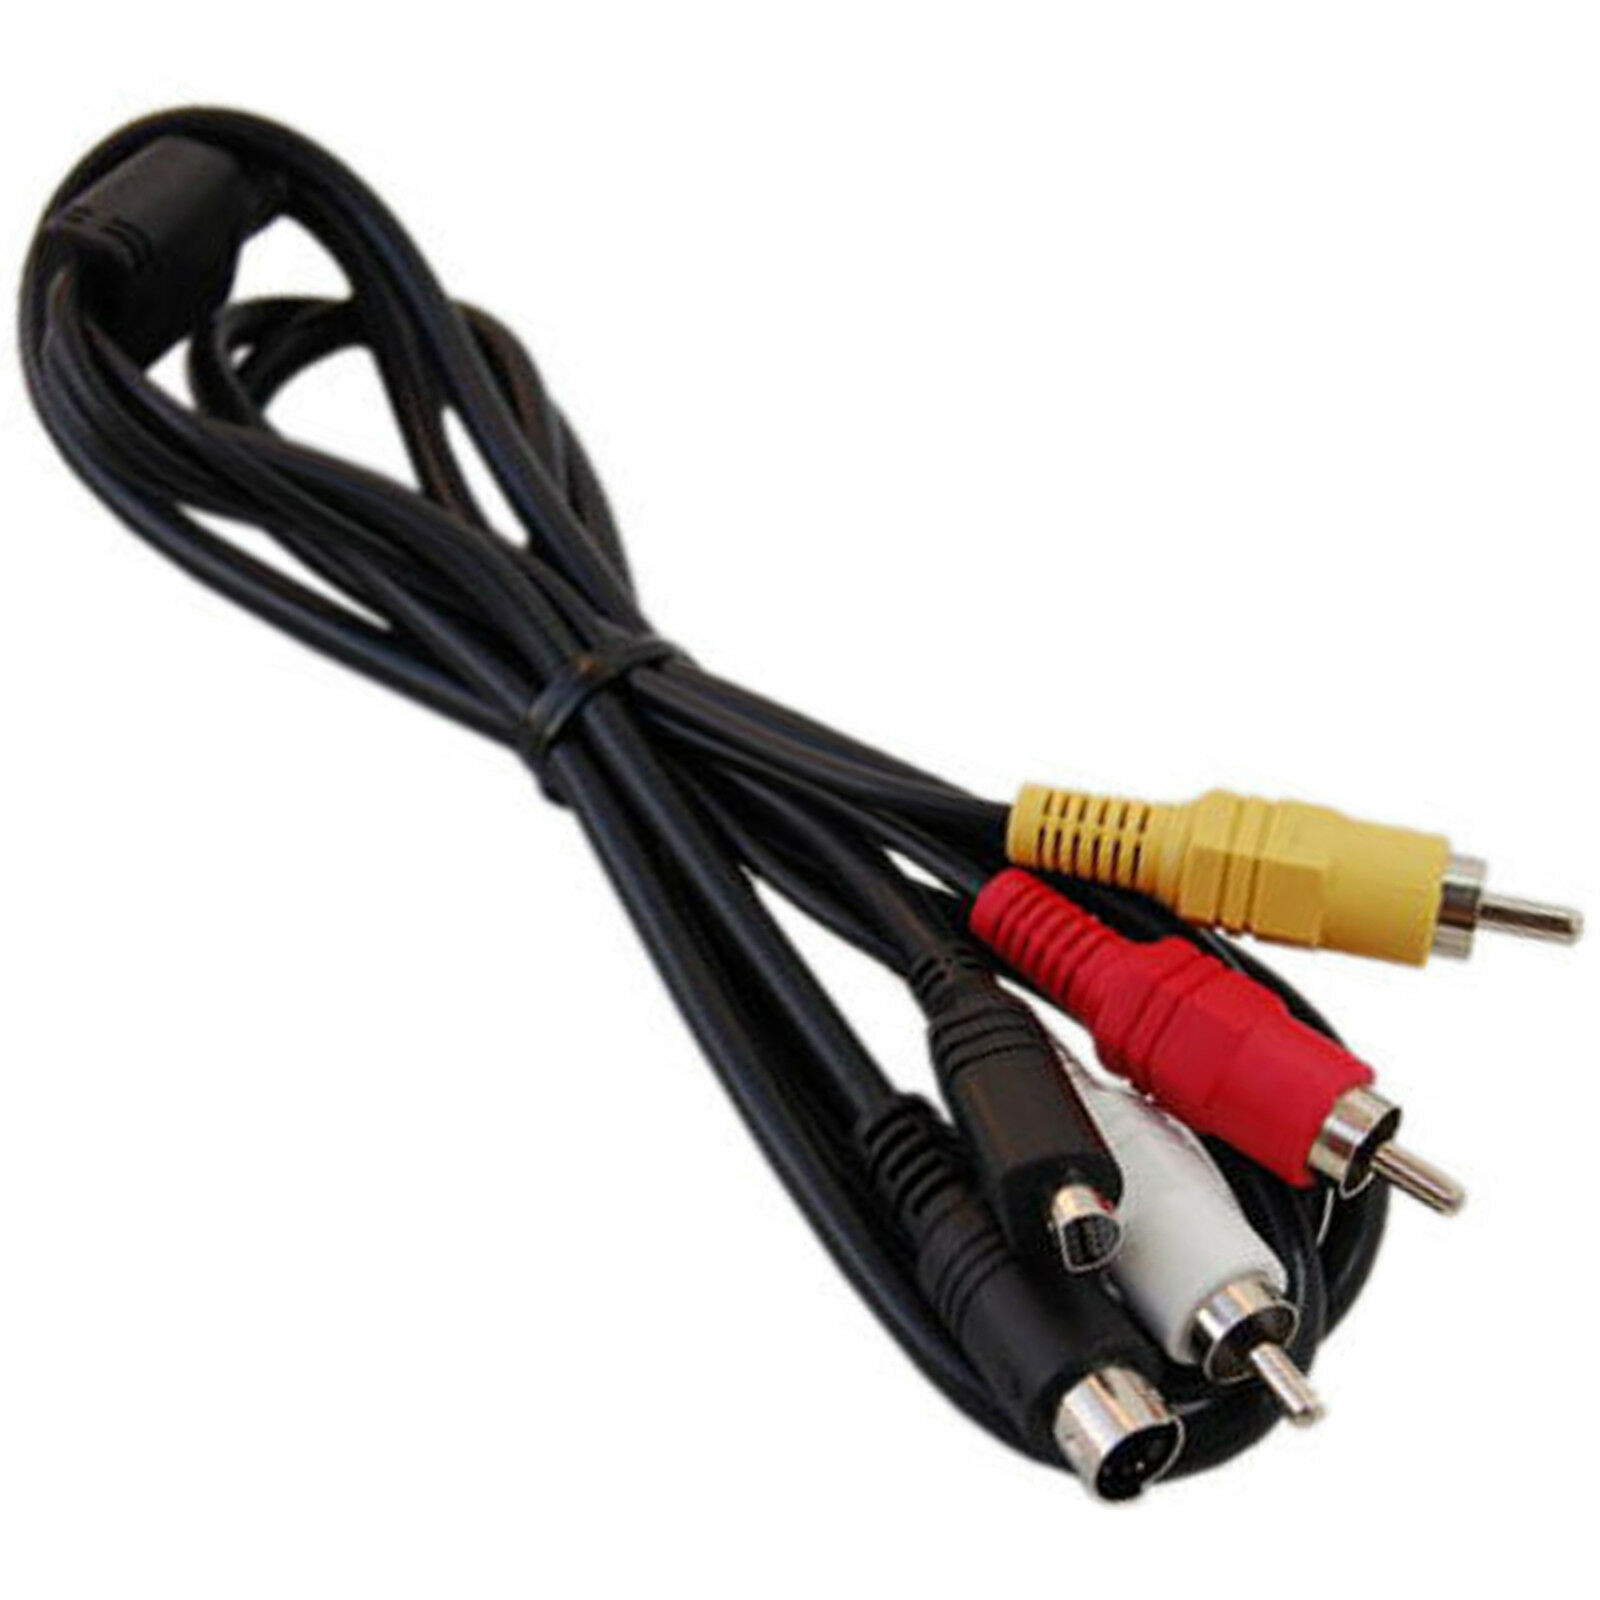 VMC-15Fs/VMC15FS AV Cable Cord for SONY Handycam DCR-HC28 DCR-HC38 DCR-HC48 DCR-HC52 - Click Image to Close